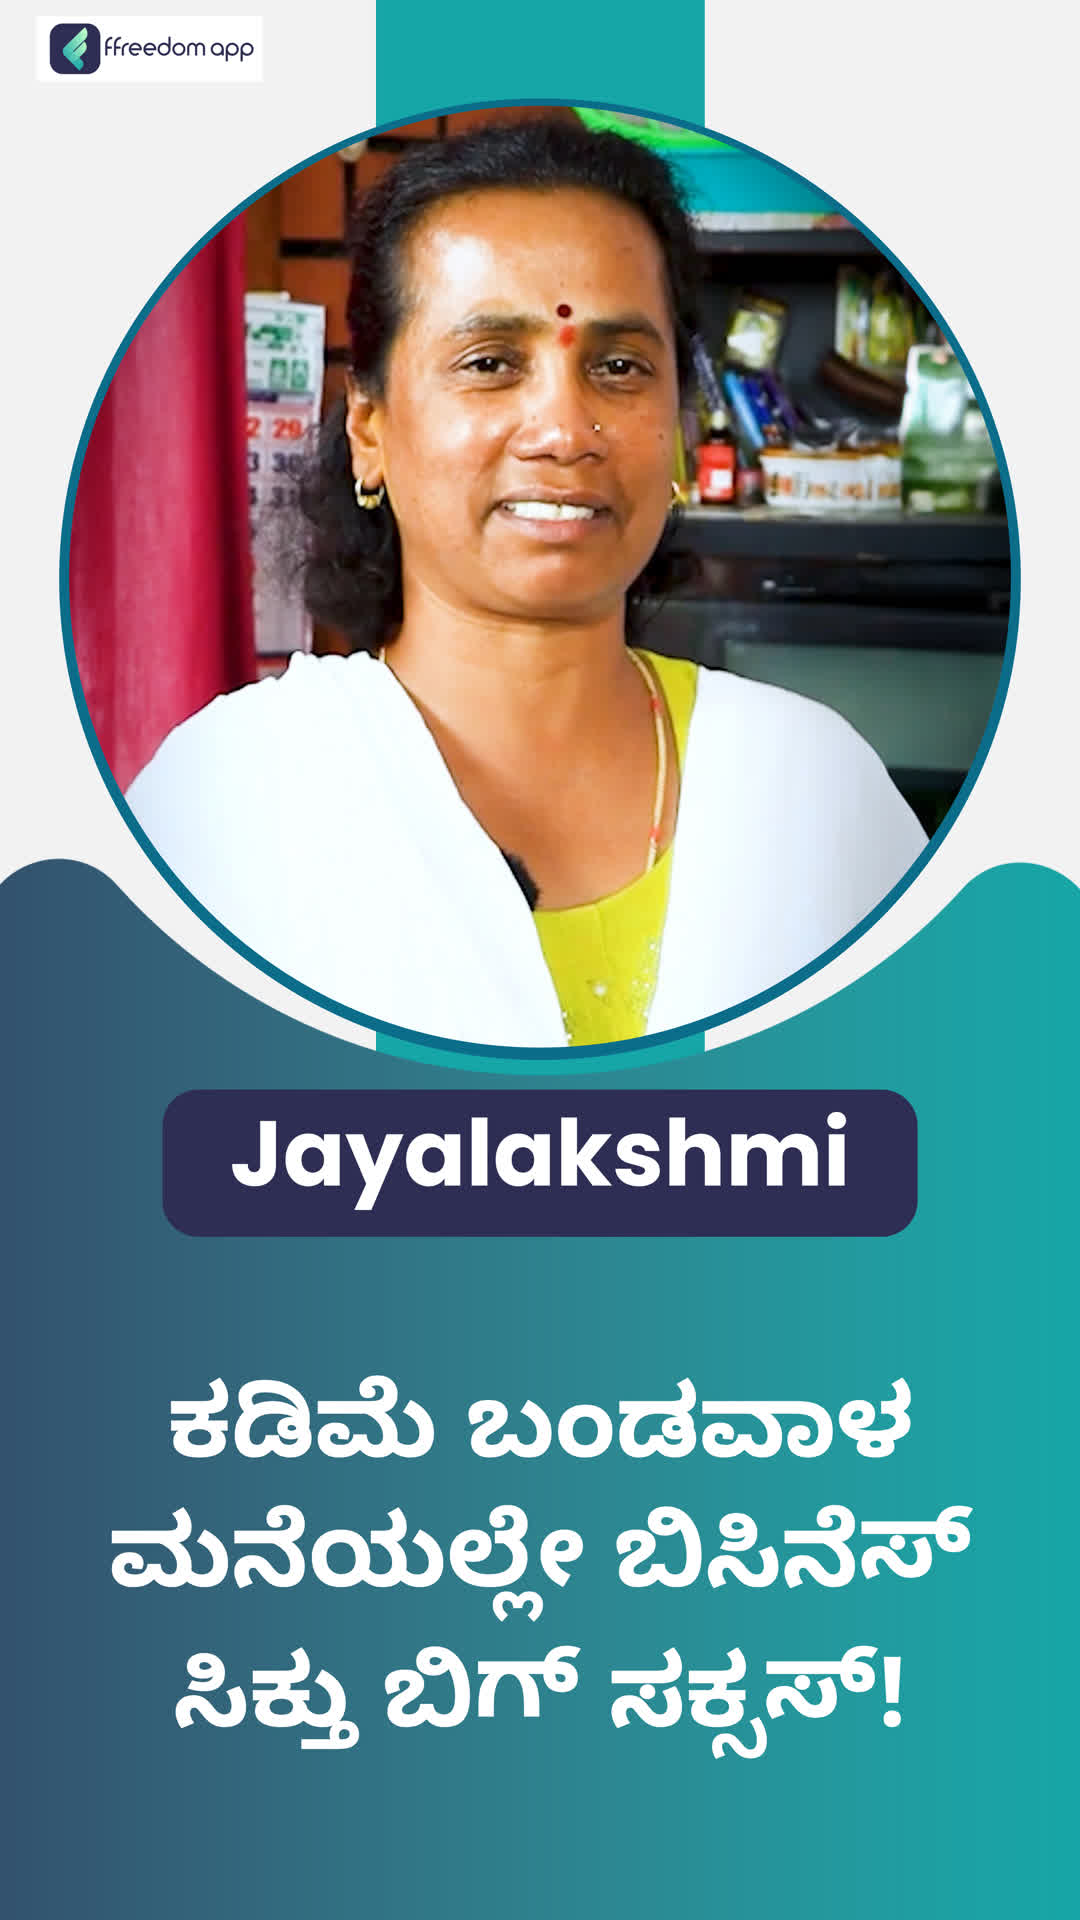 Jayalakshmi's Honest Review of ffreedom app - Bengaluru Rural ,Karnataka